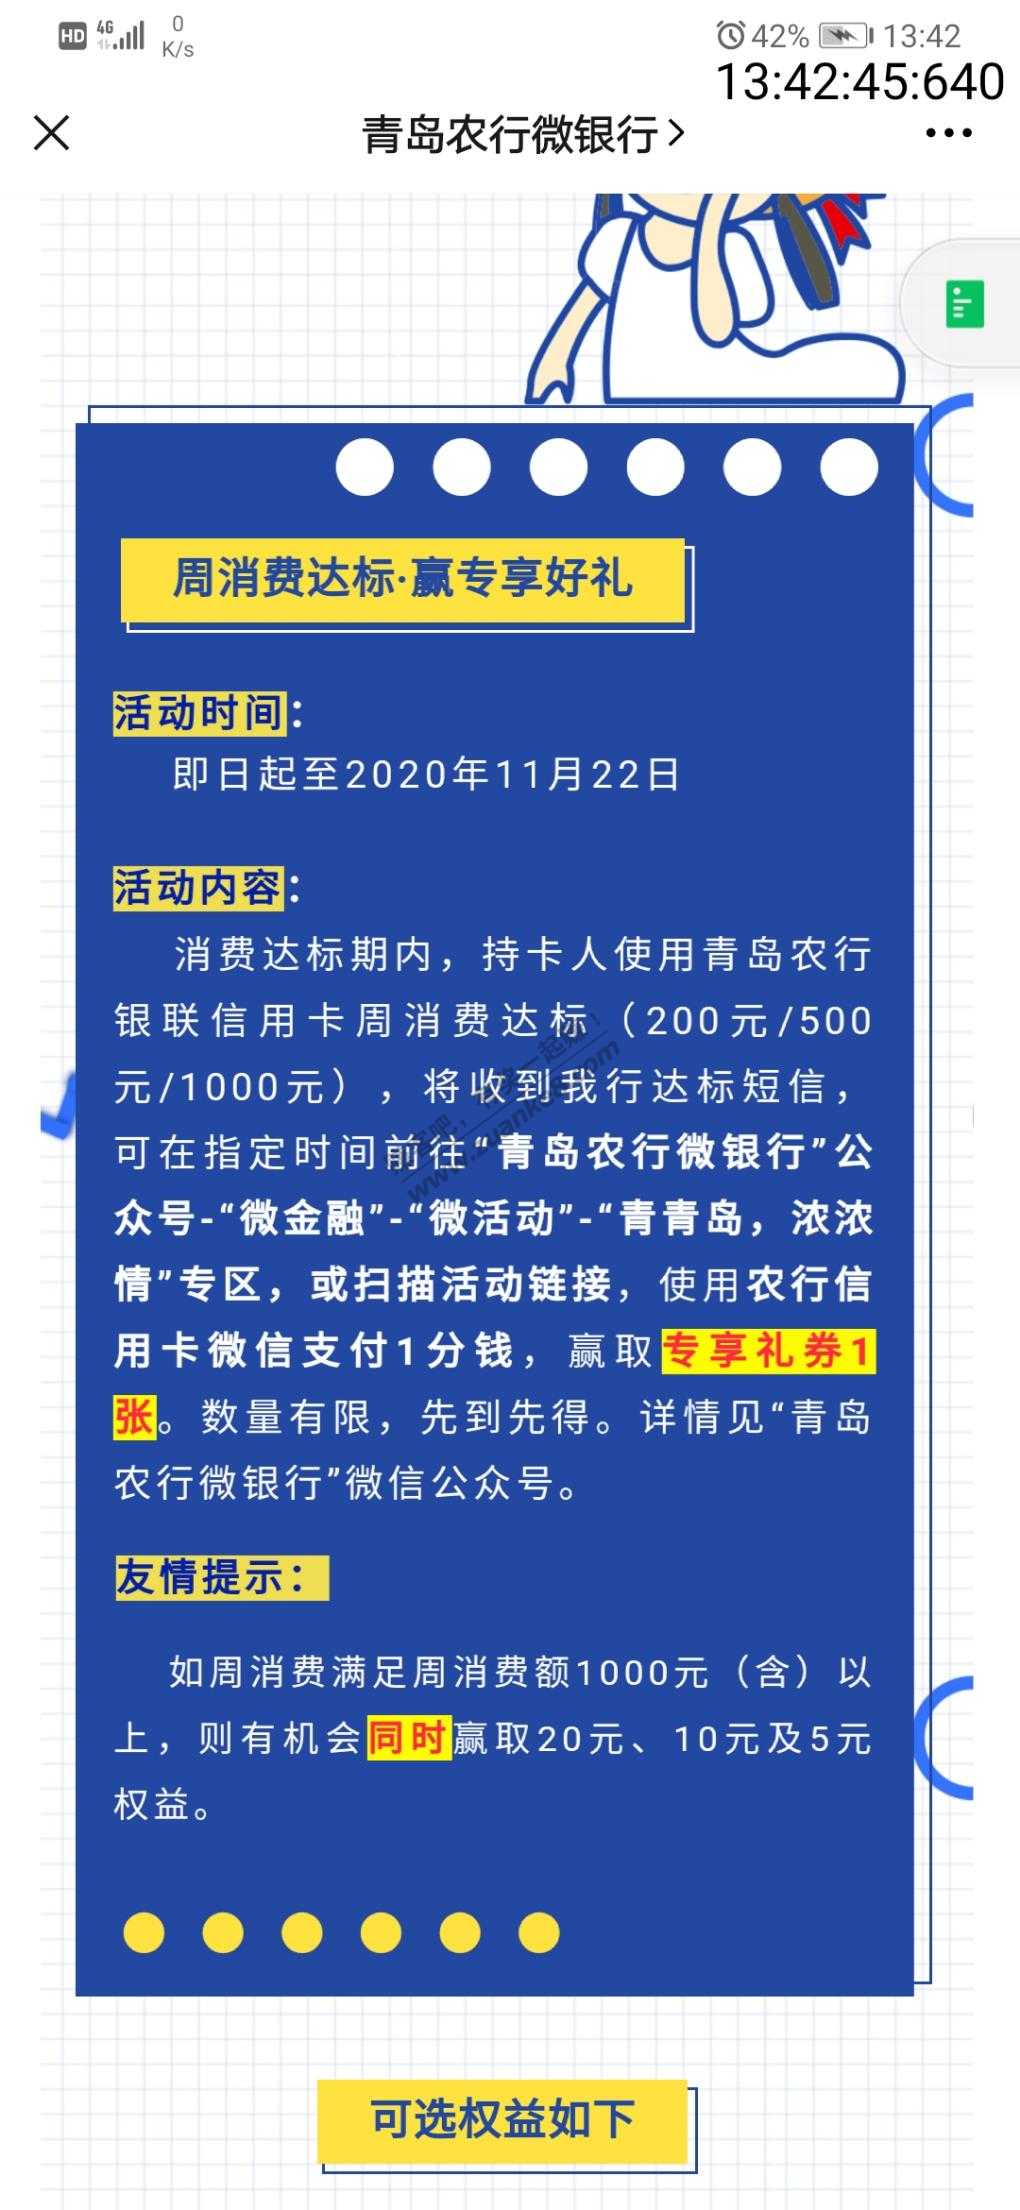 青岛农行xyk刷卡活动-及储蓄卡可参加的一个-惠小助(52huixz.com)